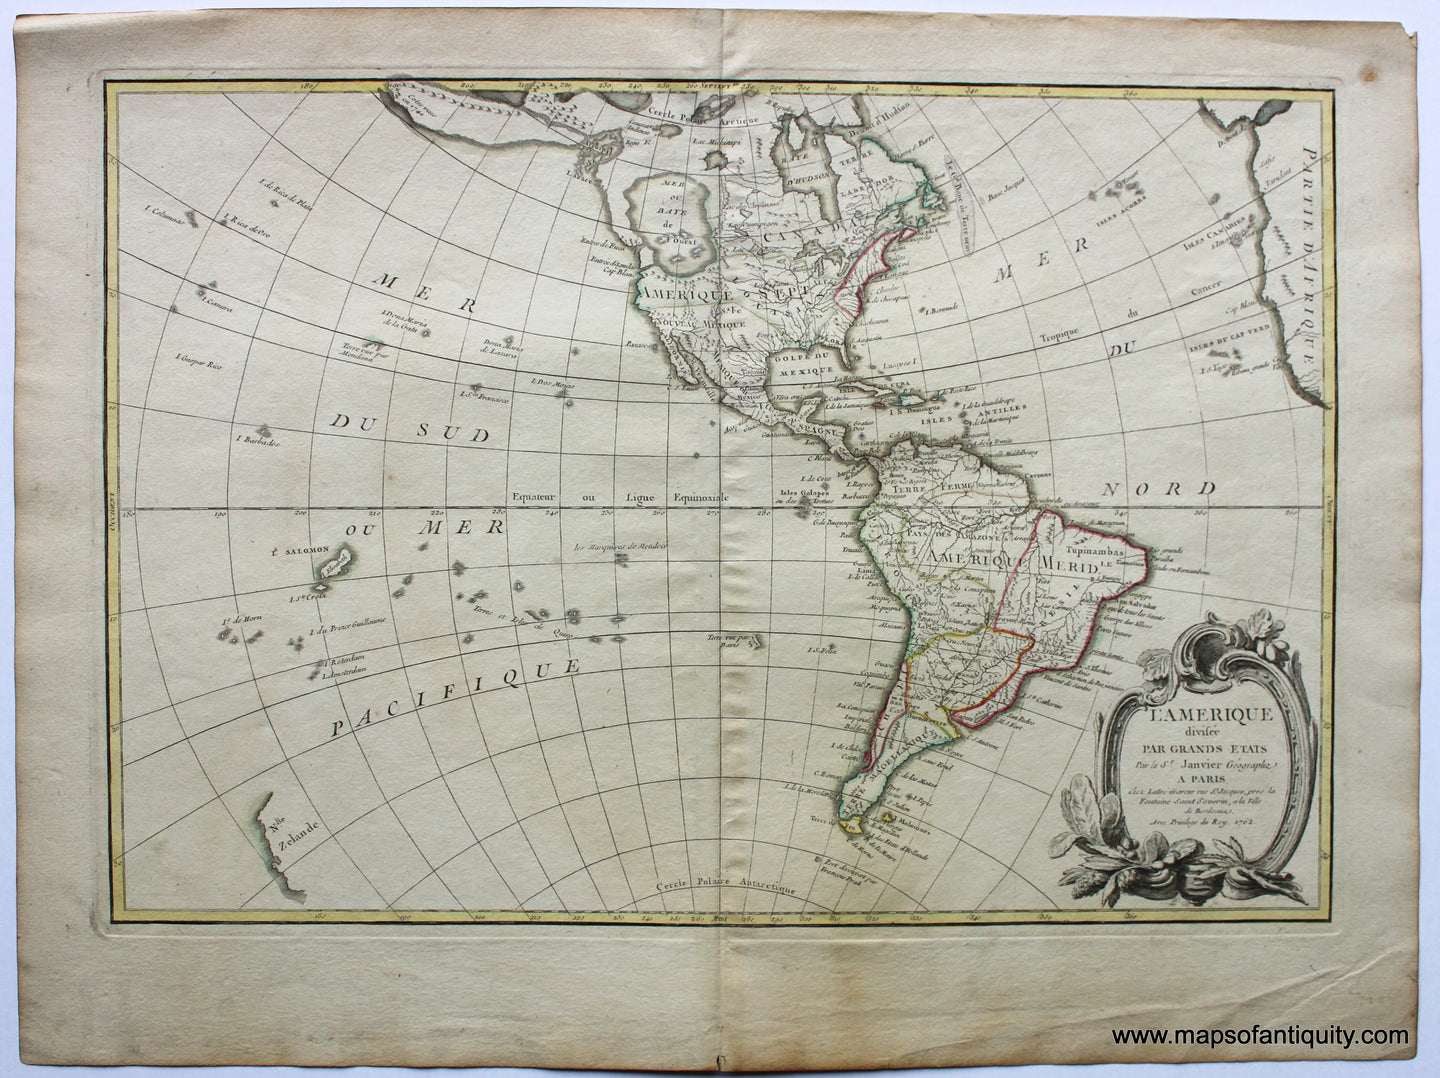 Antique-Hand-Colored-Map-L'Amerique-divisee-par-Grands-Etats-**********-North-America--1762-Janvier-Maps-Of-Antiquity